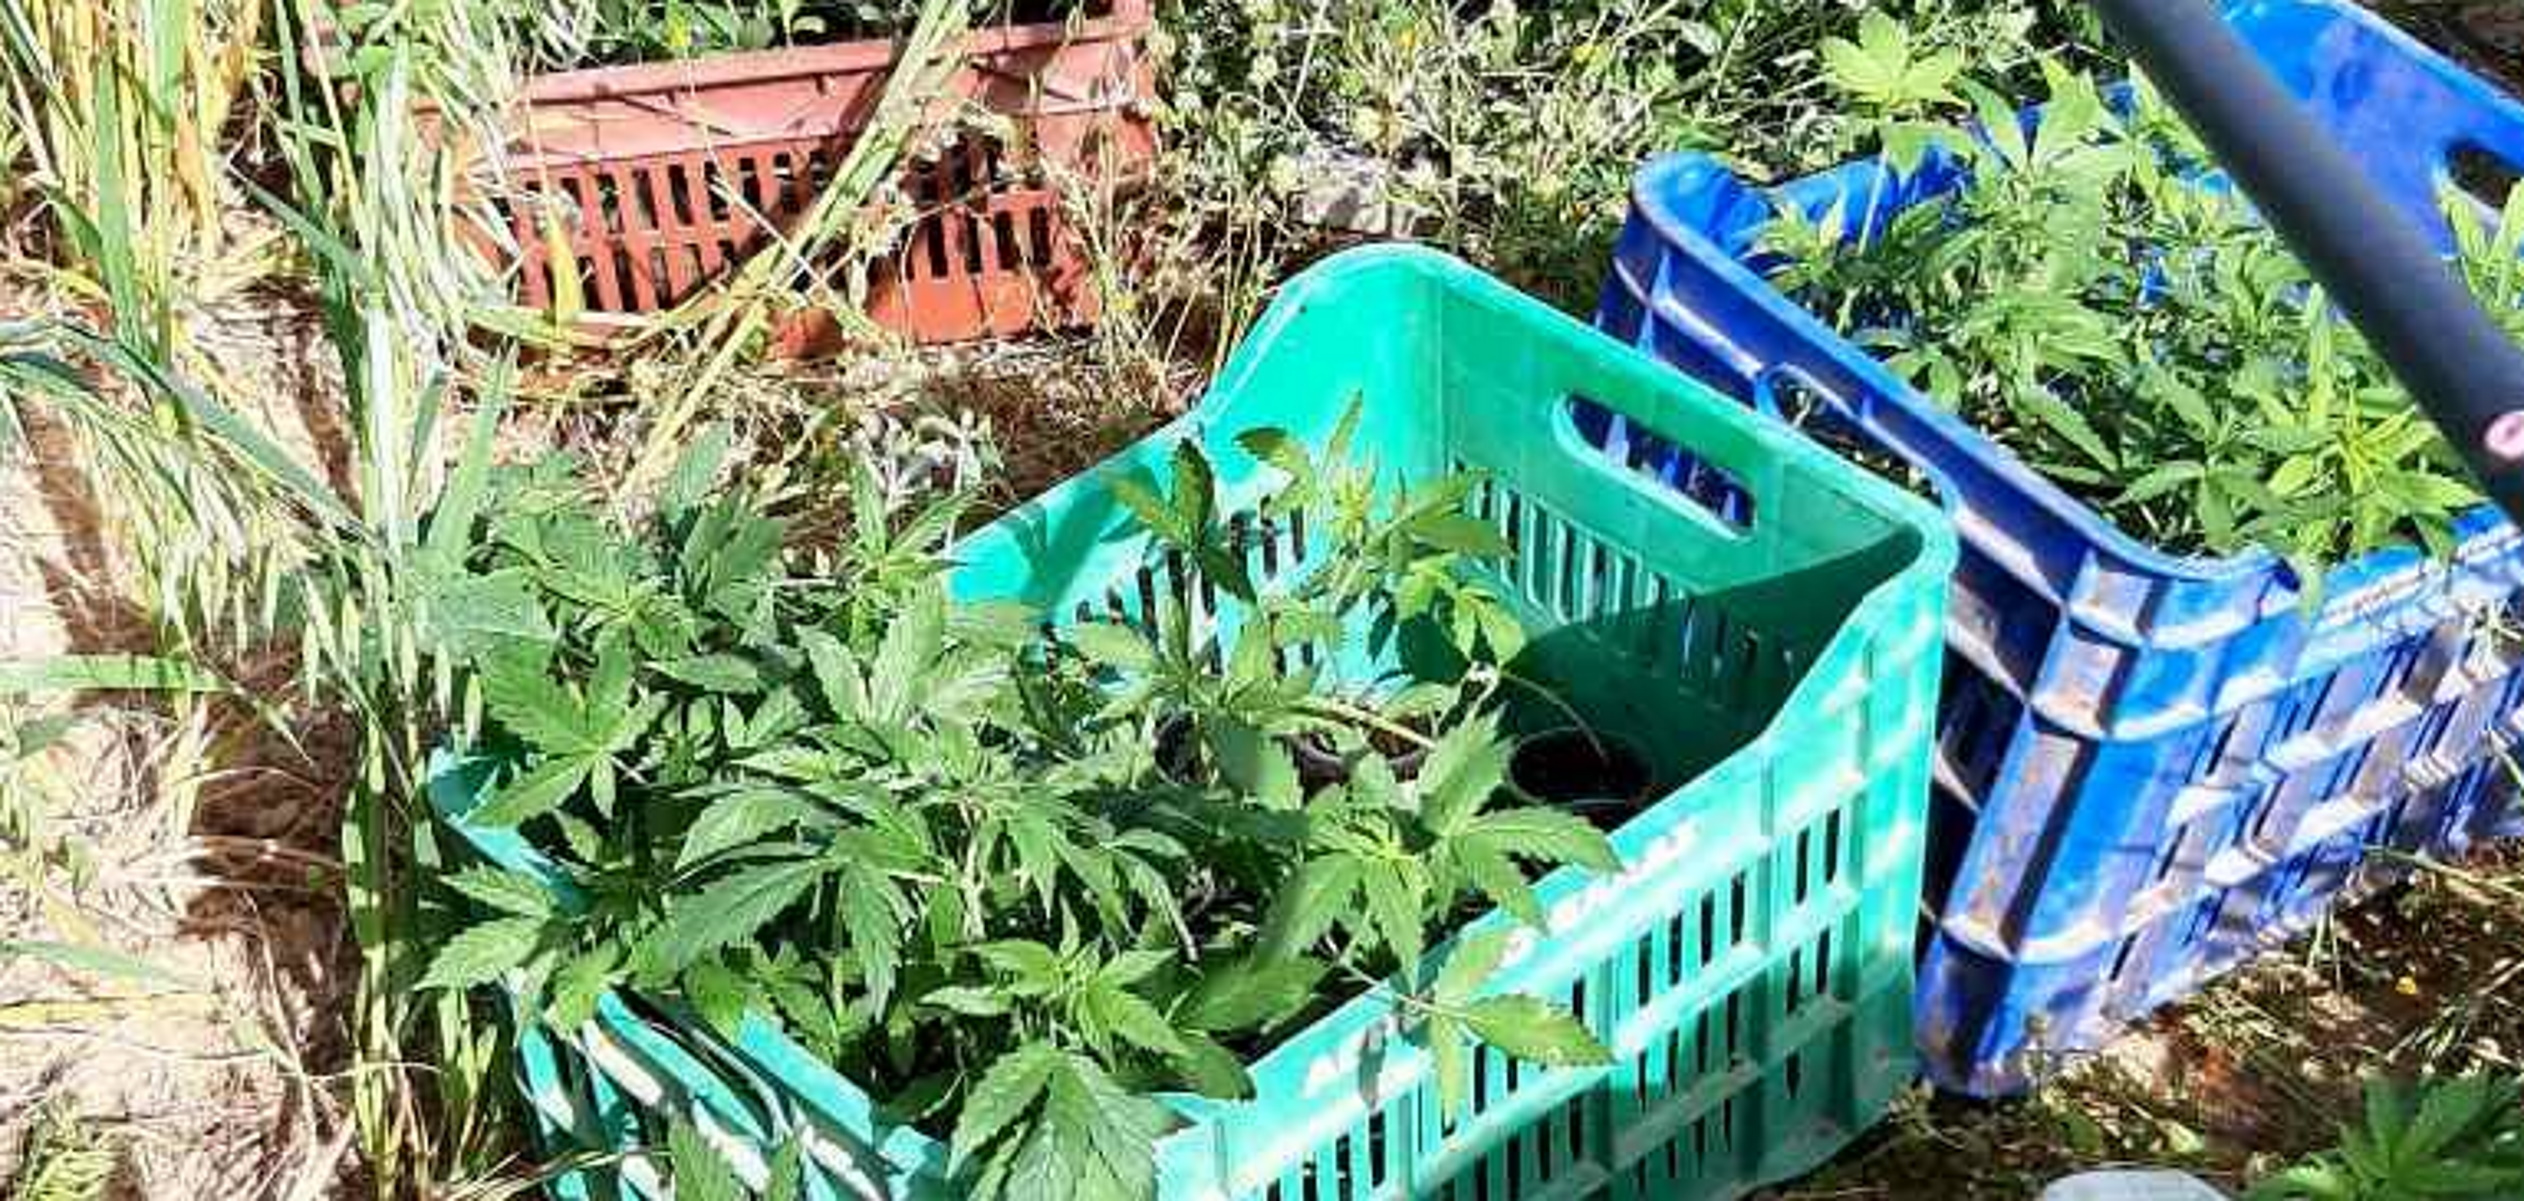 Ιεράπετρα: Στο θερμοκήπιό της καλλιεργούσε 70 δενδρύλλια χασίς – Μία σύλληψη